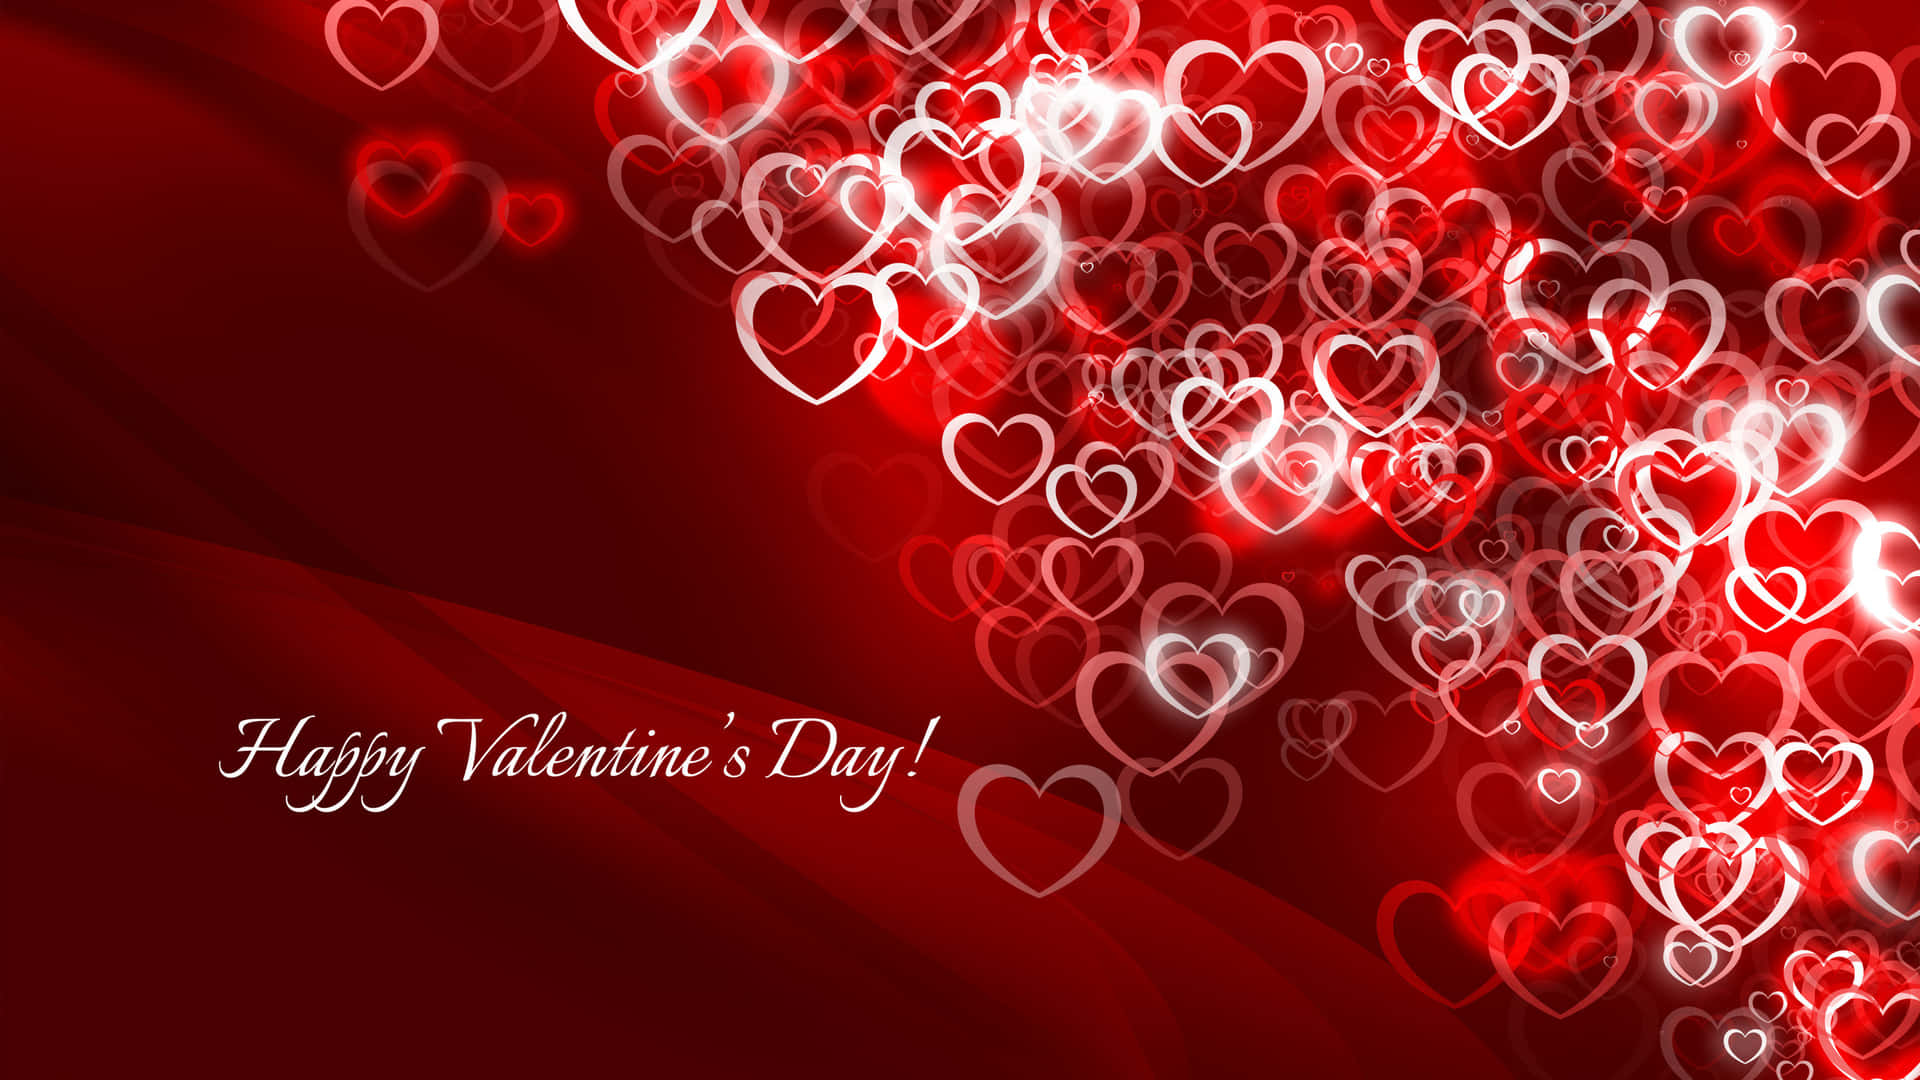 Romantic Happy Valentine's Day Background